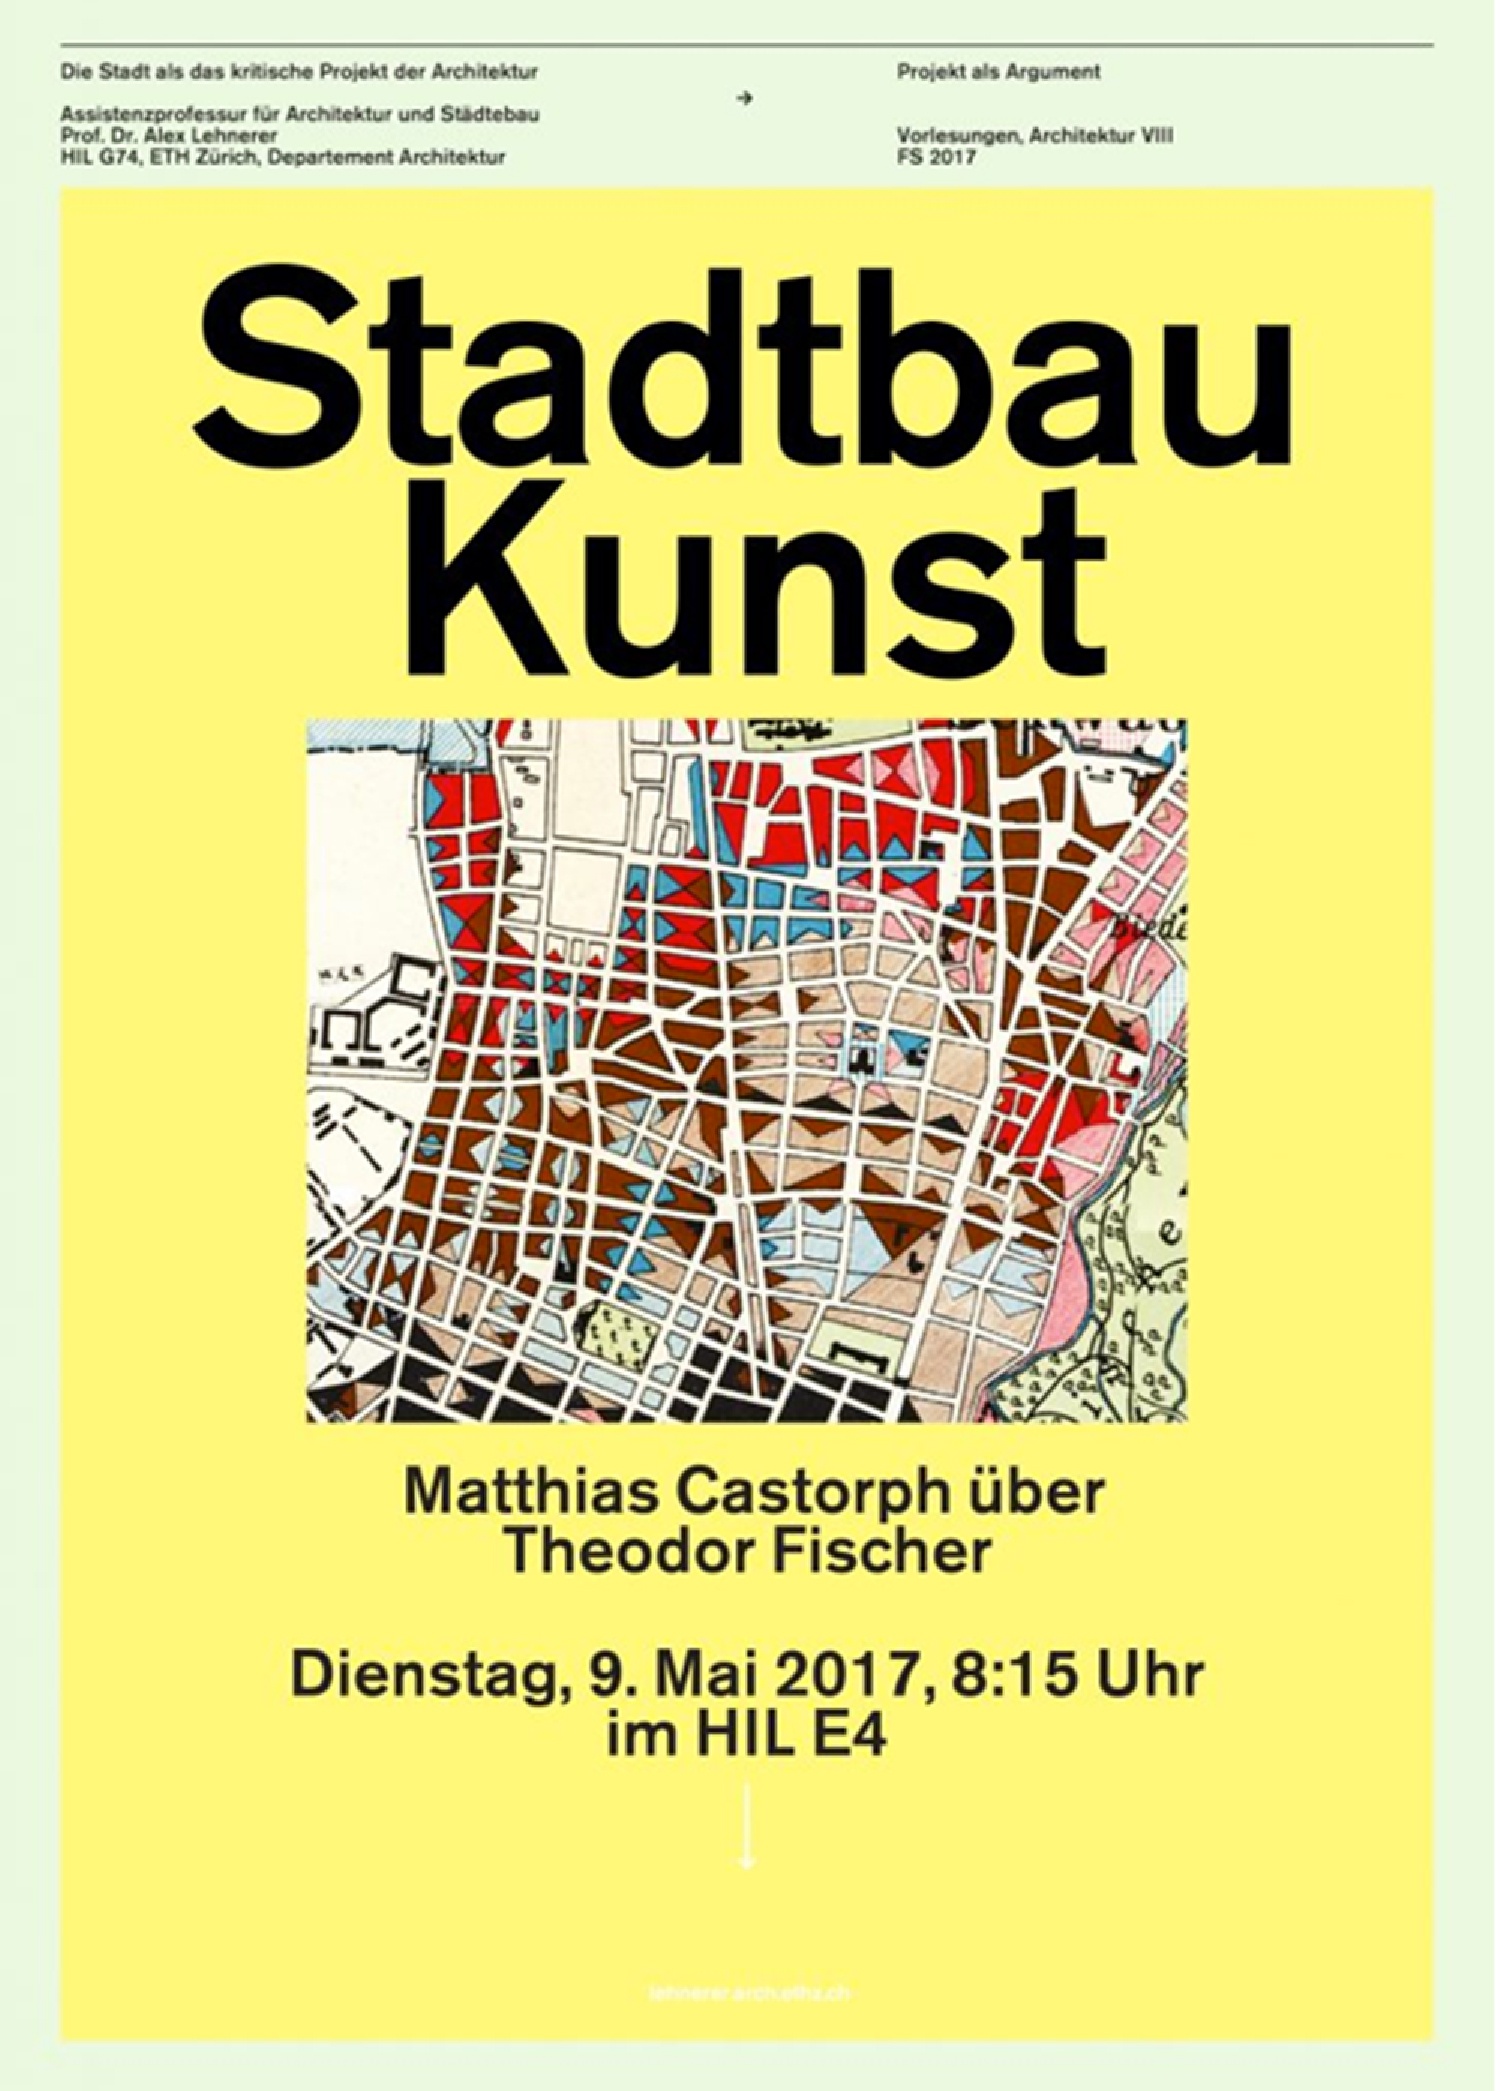 Goetz Castorph Lehmann Tabillion Architektur Städtebau München  Vortrag ETH Zürich Stadtbaukunst